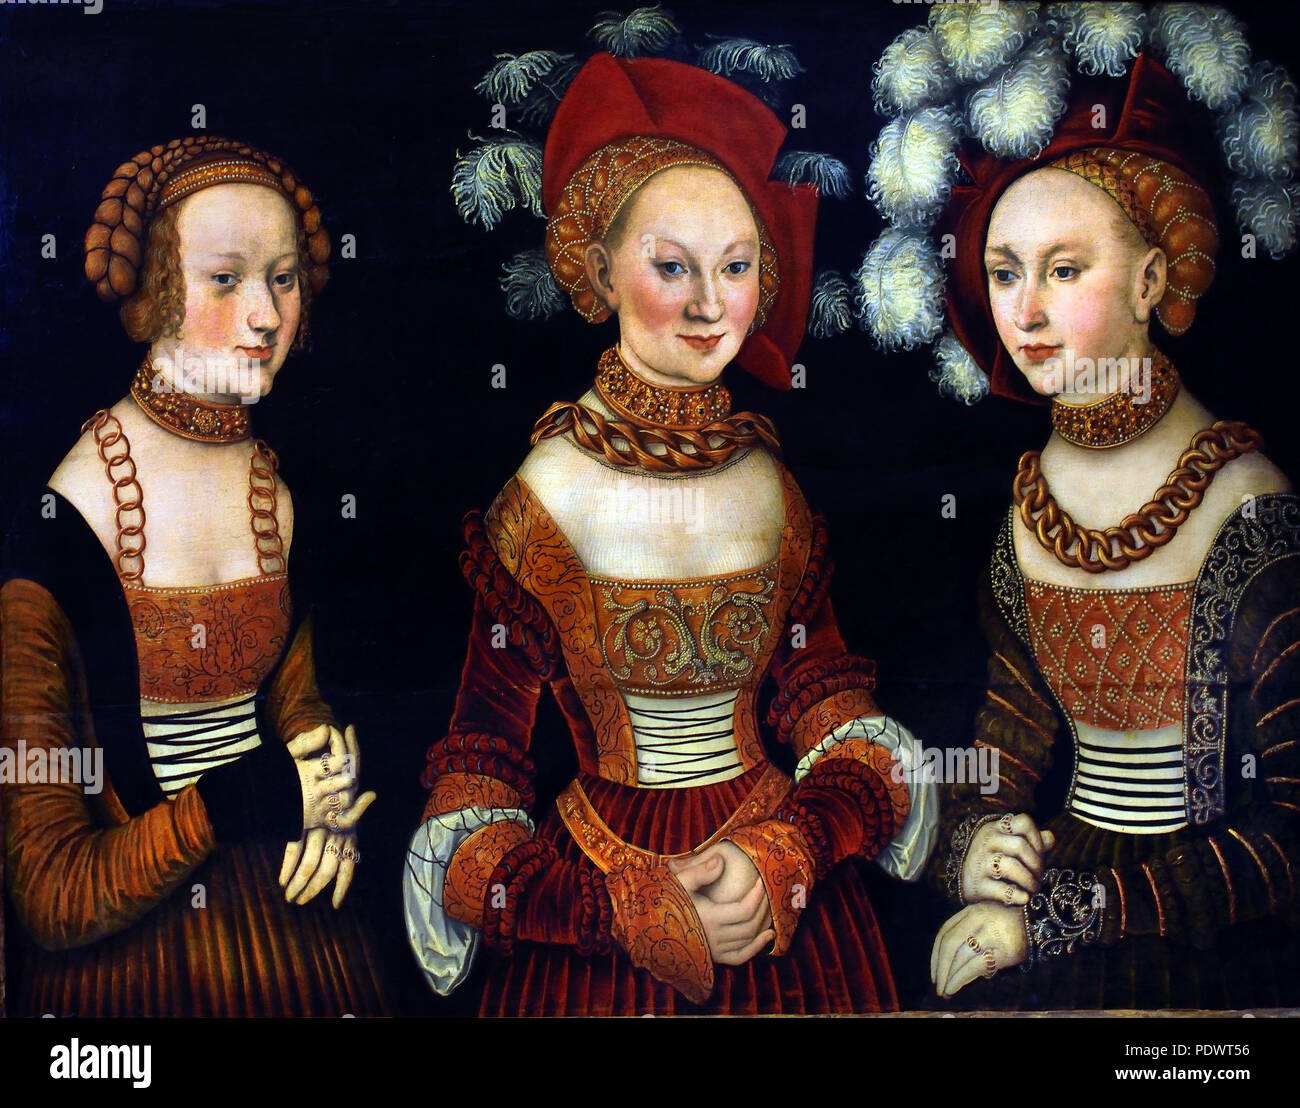 La princesa Sibylla (1515-1592), Emilia (1516-1591) y Sidonia (1518-1575) de Sajonia Lucas Cranach 1472 - 1553 ALEMÁN Alemania ( Porträt der drei Töchter Herzog Heinrichs des Frommen - Retrato de los tres hijas Duque Enrique el Pío ) Foto de stock